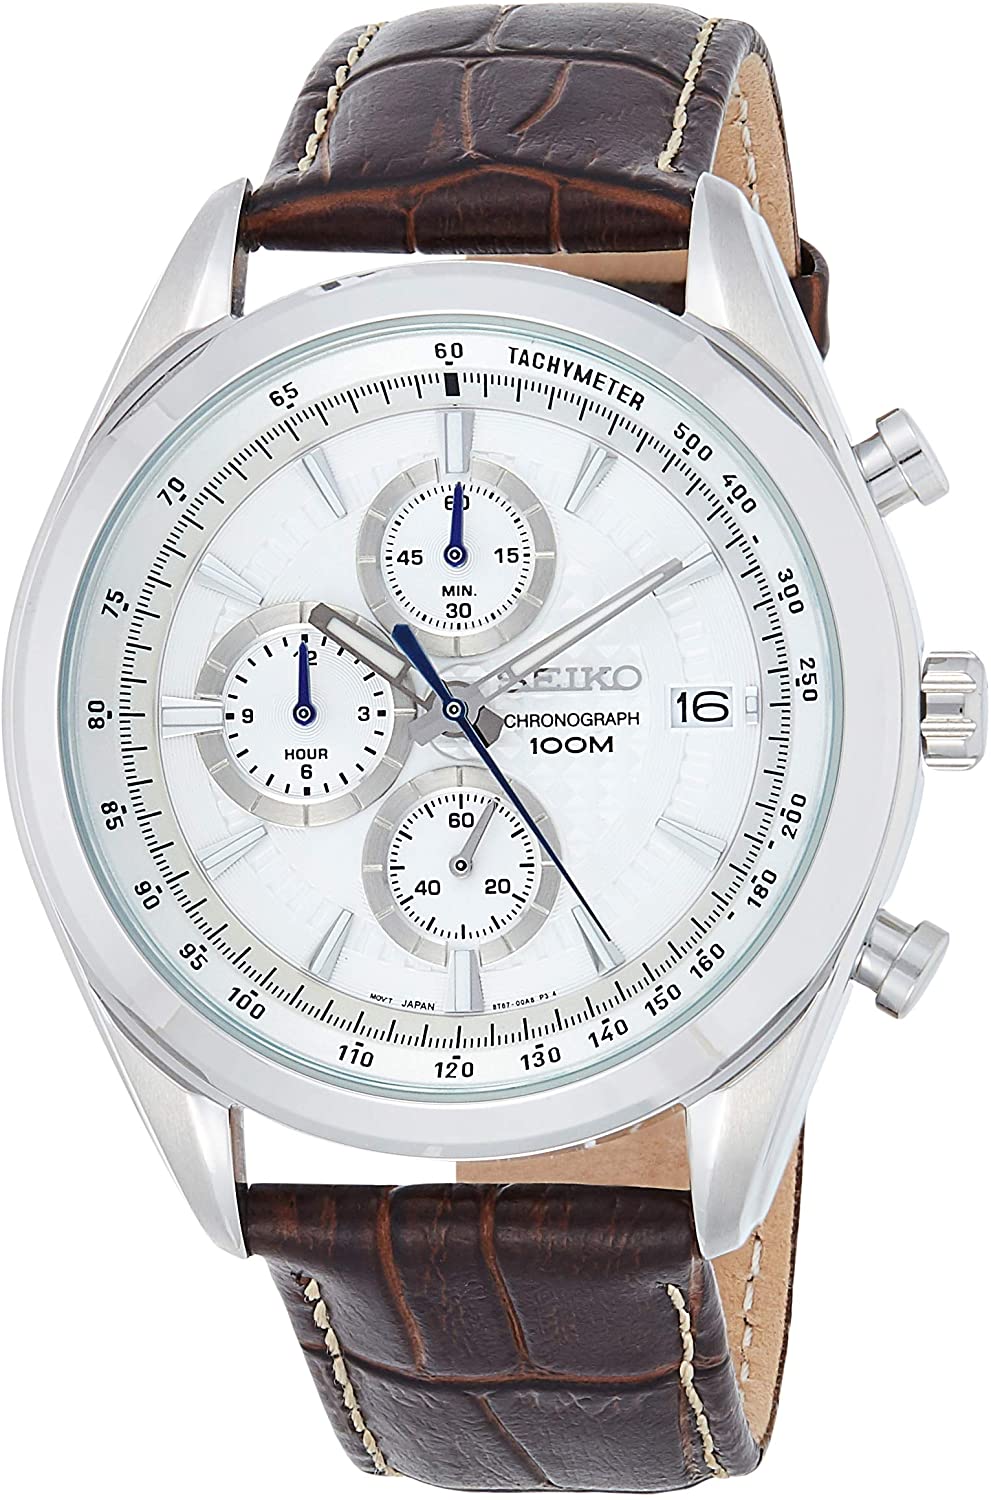 Đồng hồ Seiko cổ sẵn sàng (SEIKO SSB181 Watch) Seiko Chronograph SSB181  Silver Tone Dial Brown Leather Band Men's Watch [Hộp & Sách hướng dẫn của  Nhà sản xuất + Người bán